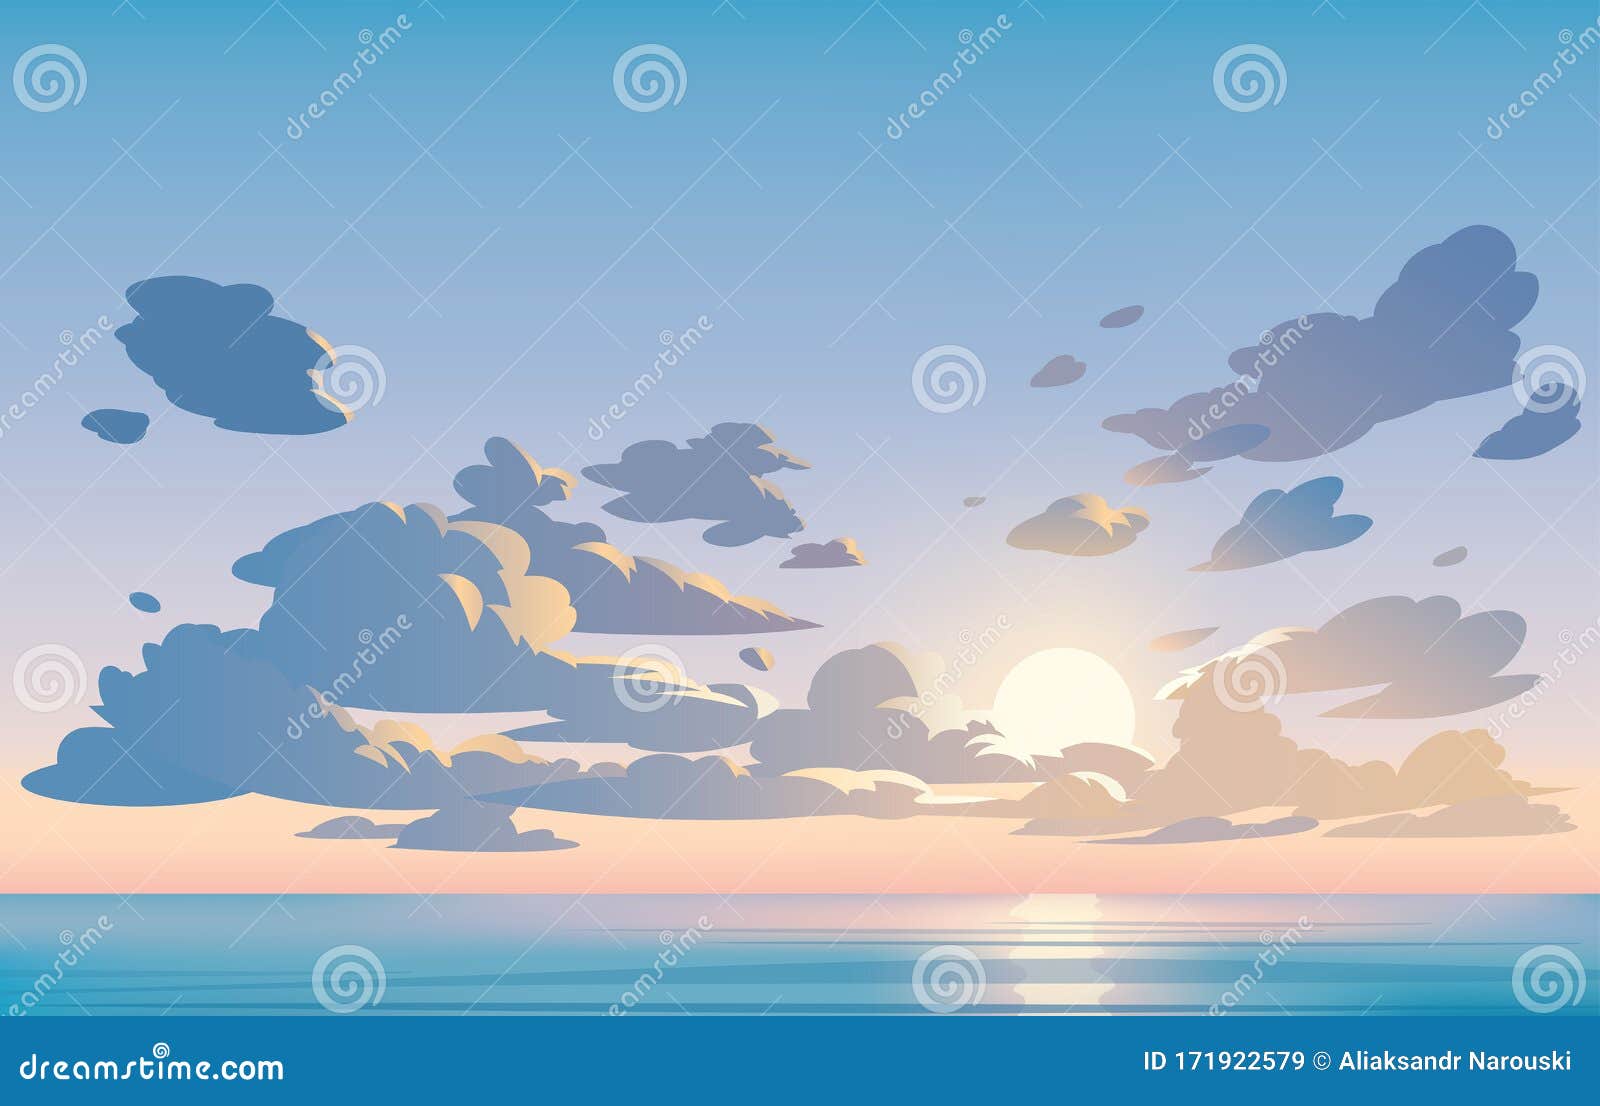 Thưởng thức phong cảnh đường vẽ hoạt hình mặt trời lặn với màu xanh của bầu trời và những đám mây trắng muốt. Hình ảnh này sẽ đưa bạn vào một thế giới đầy màu sắc và thanh bình, mang lại cảm giác thoải mái và thư giãn cho bạn. Translation: Enjoy the vector landscape of a cartoon sunset with blue sky and fluffy white clouds. This image takes you into a colorful and peaceful world, giving you a feeling of comfort and relaxation.